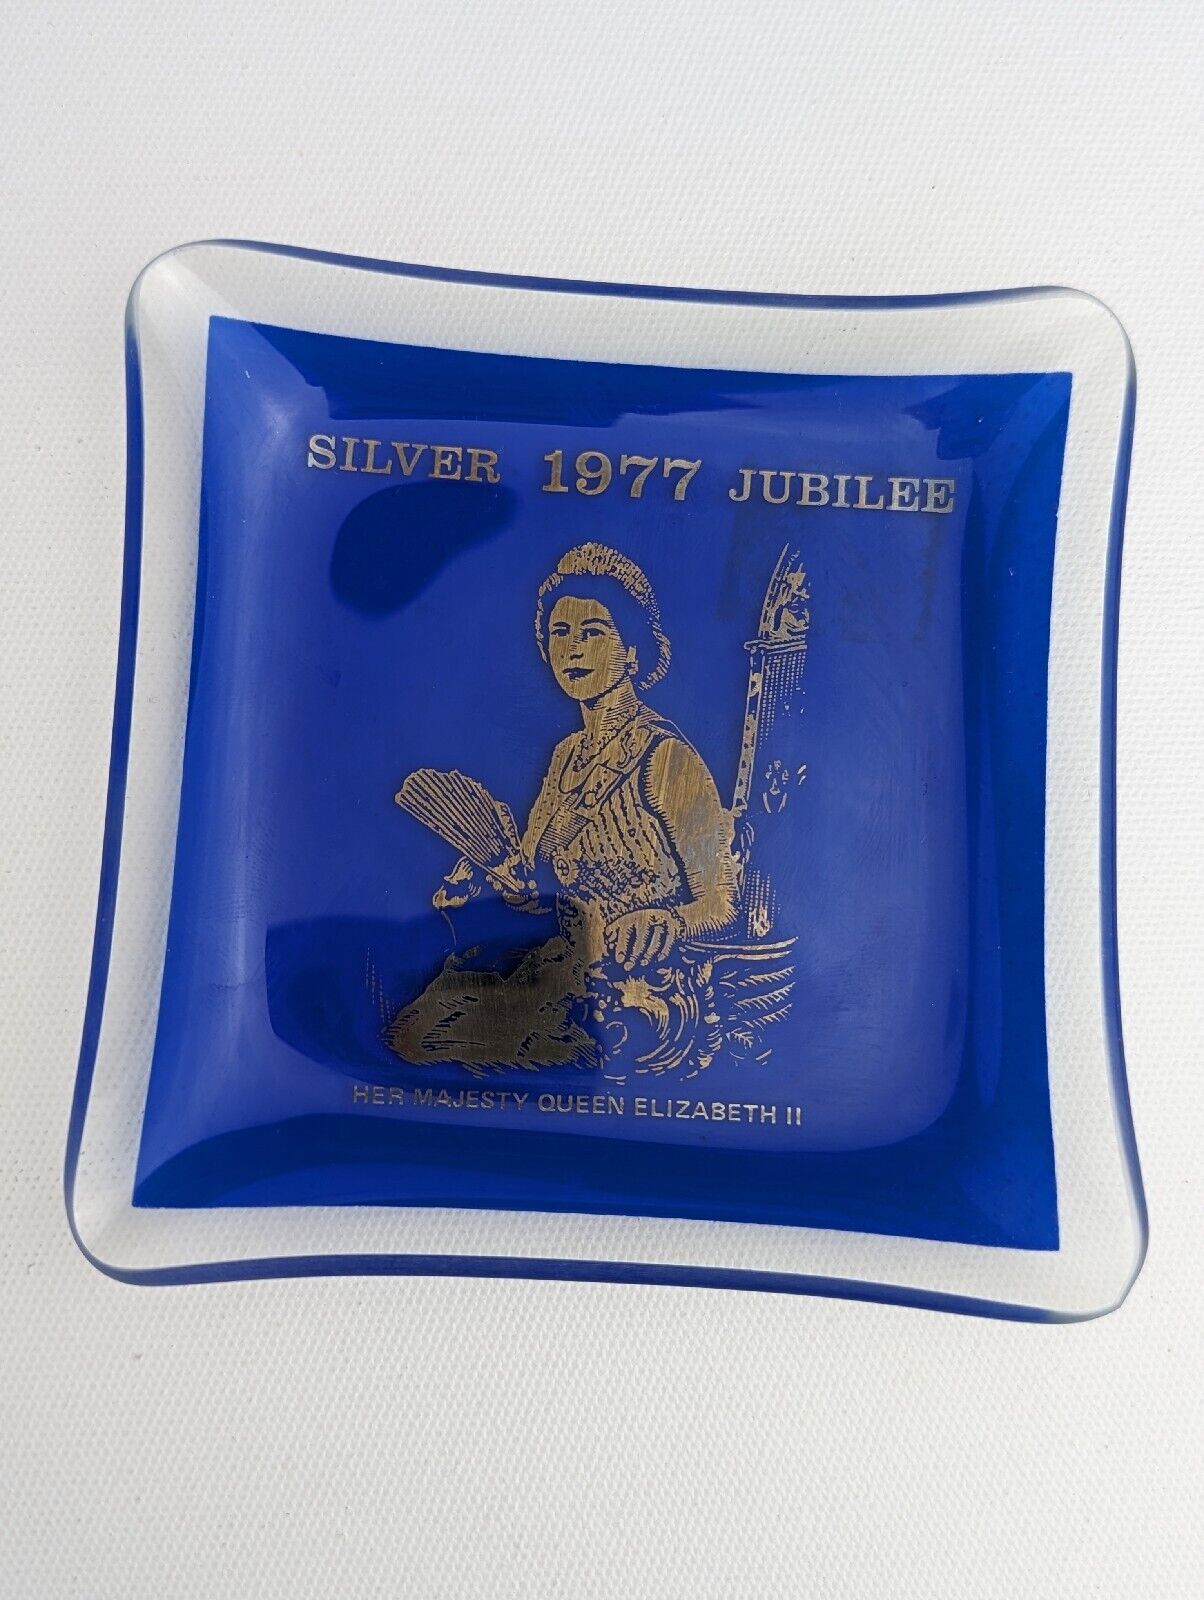 Vintage HRH Queen Elizabeth II Silver Jubilee 1977 Glass Trinket Plate Dish Tray